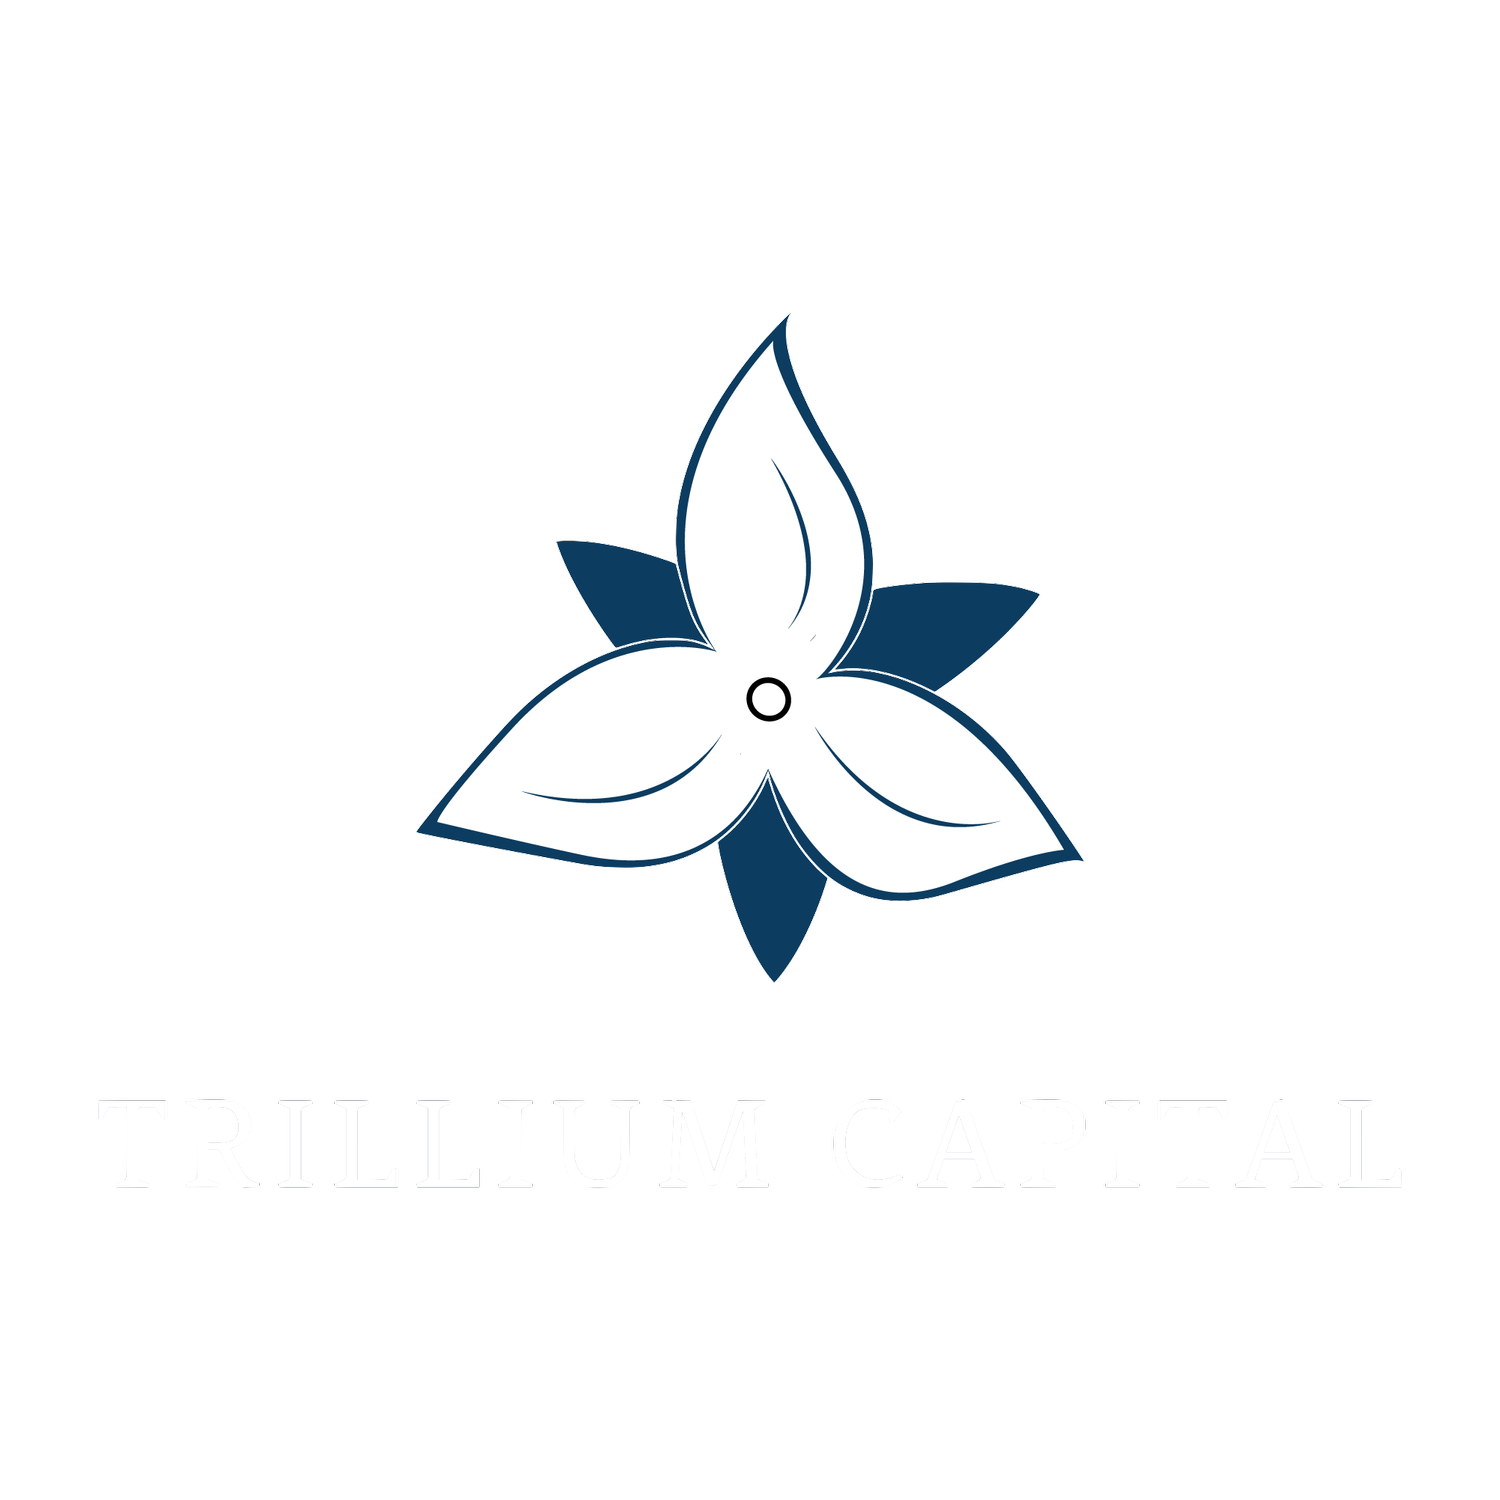 Trillium Capital